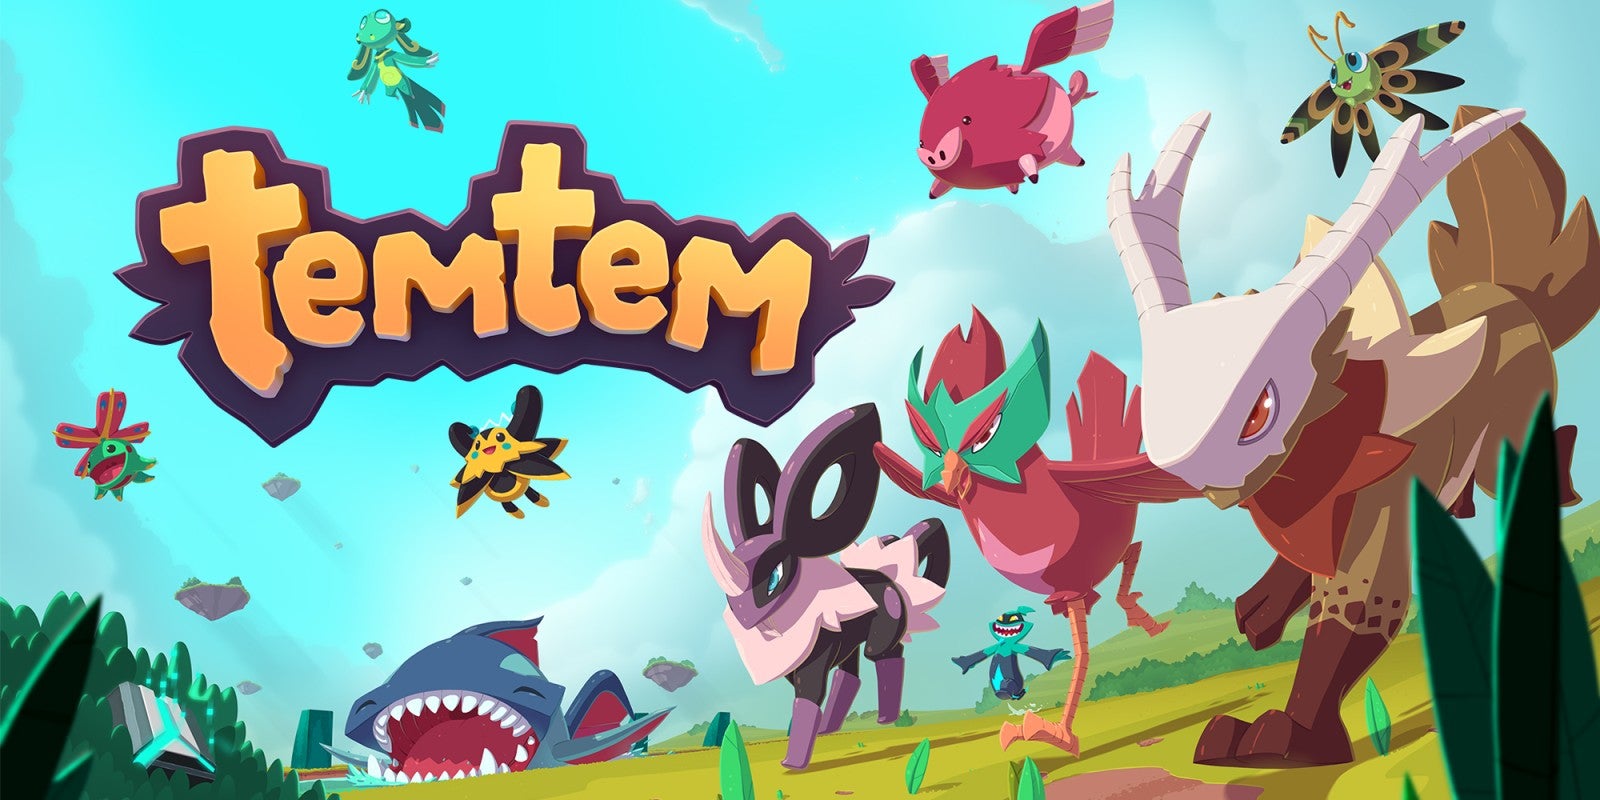 Imagem para Versão finalizada de Temtem, o jogo espanhol inspirado em Pokémon, fica disponível hoje